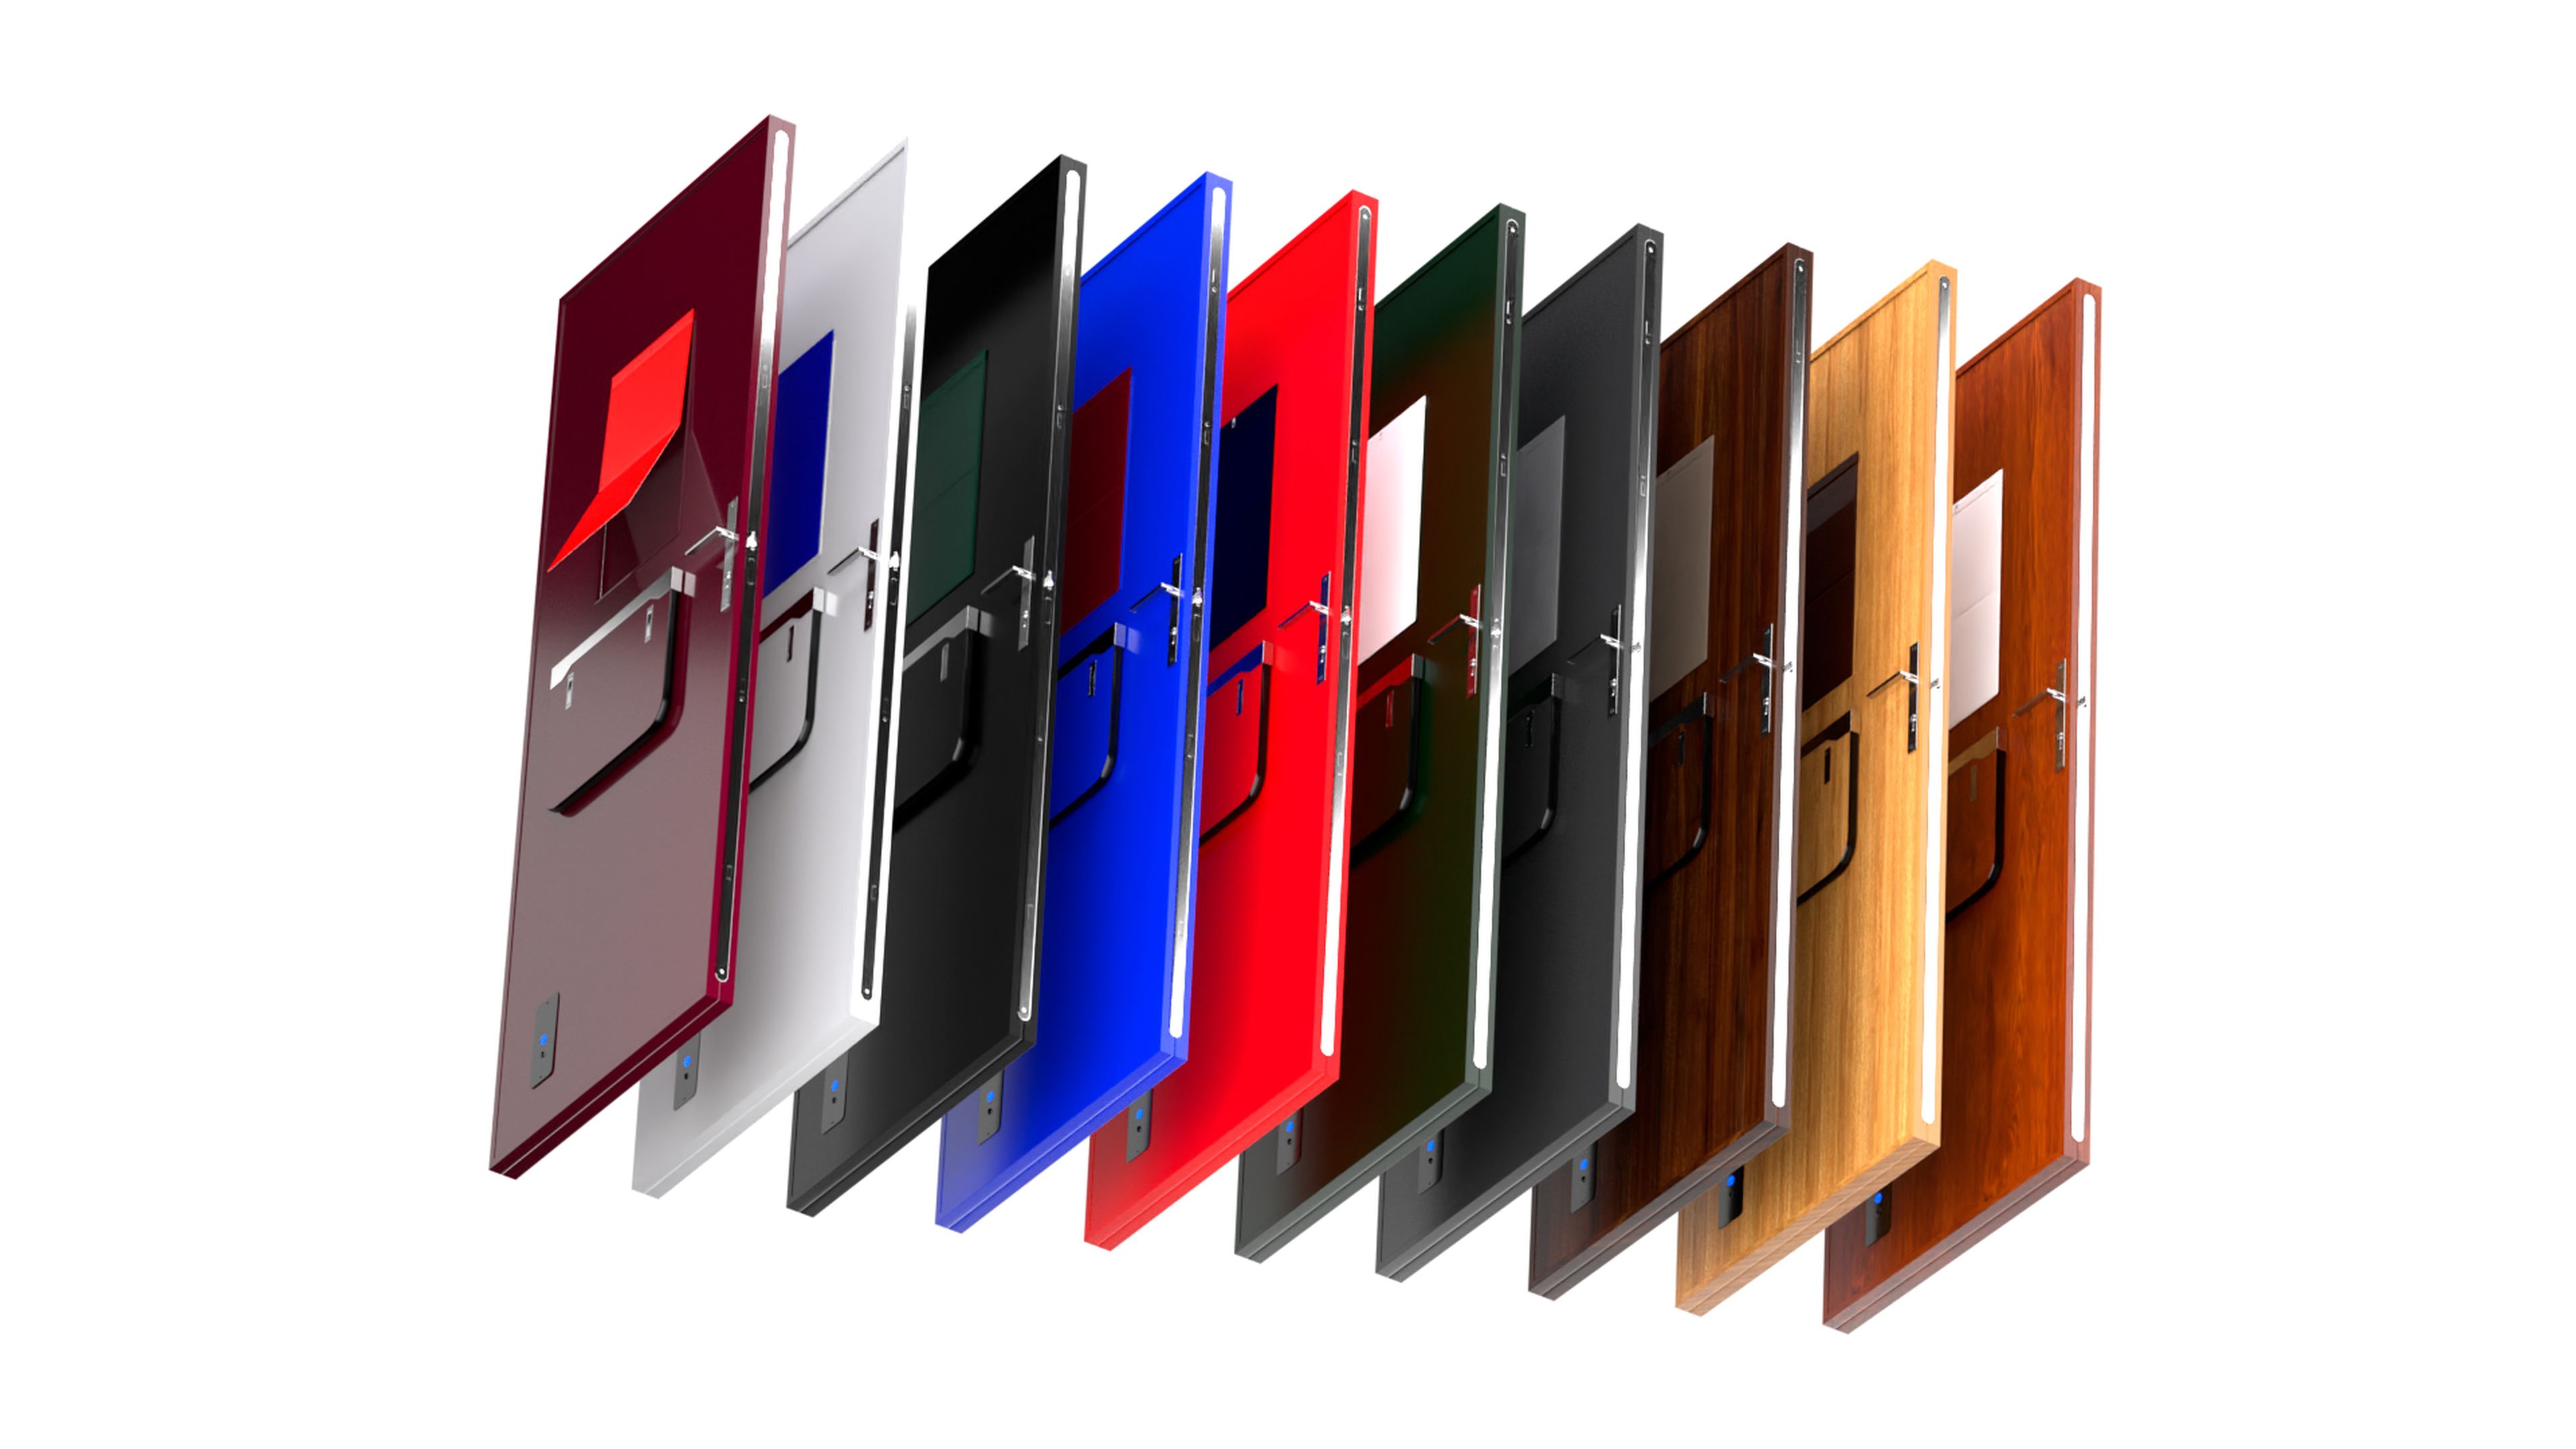 Las puertas inteligentes creadas por la startup Yolodoor están disponibles en varios colores.